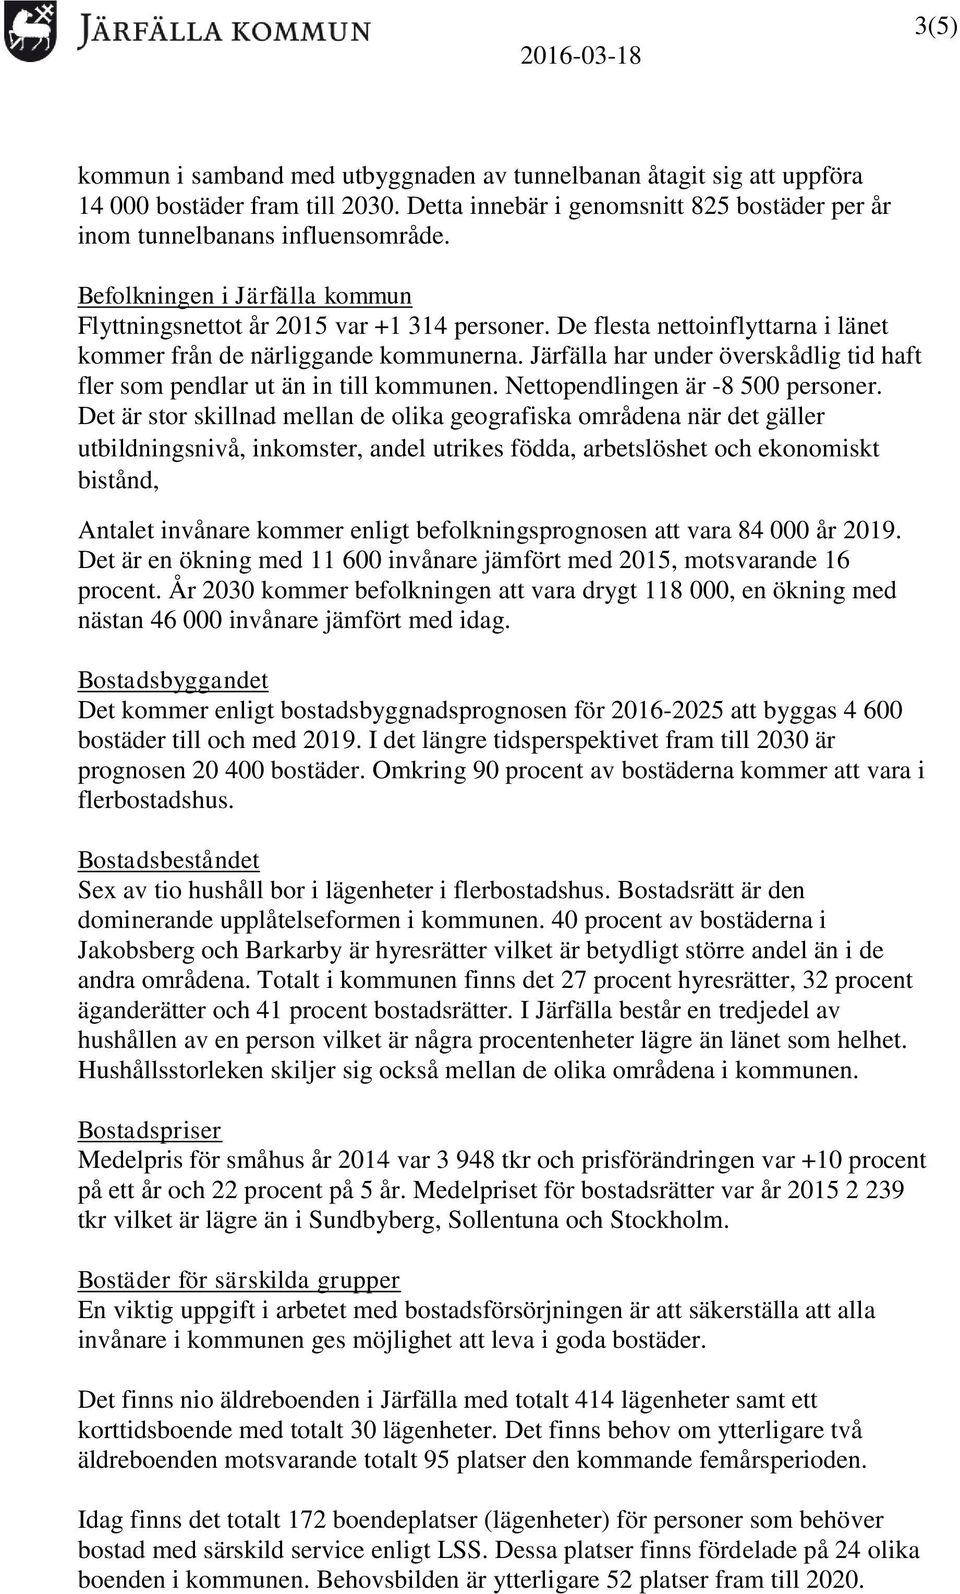 Järfälla har under överskådlig tid haft fler som pendlar ut än in till kommunen. Nettopendlingen är -8 500 personer.